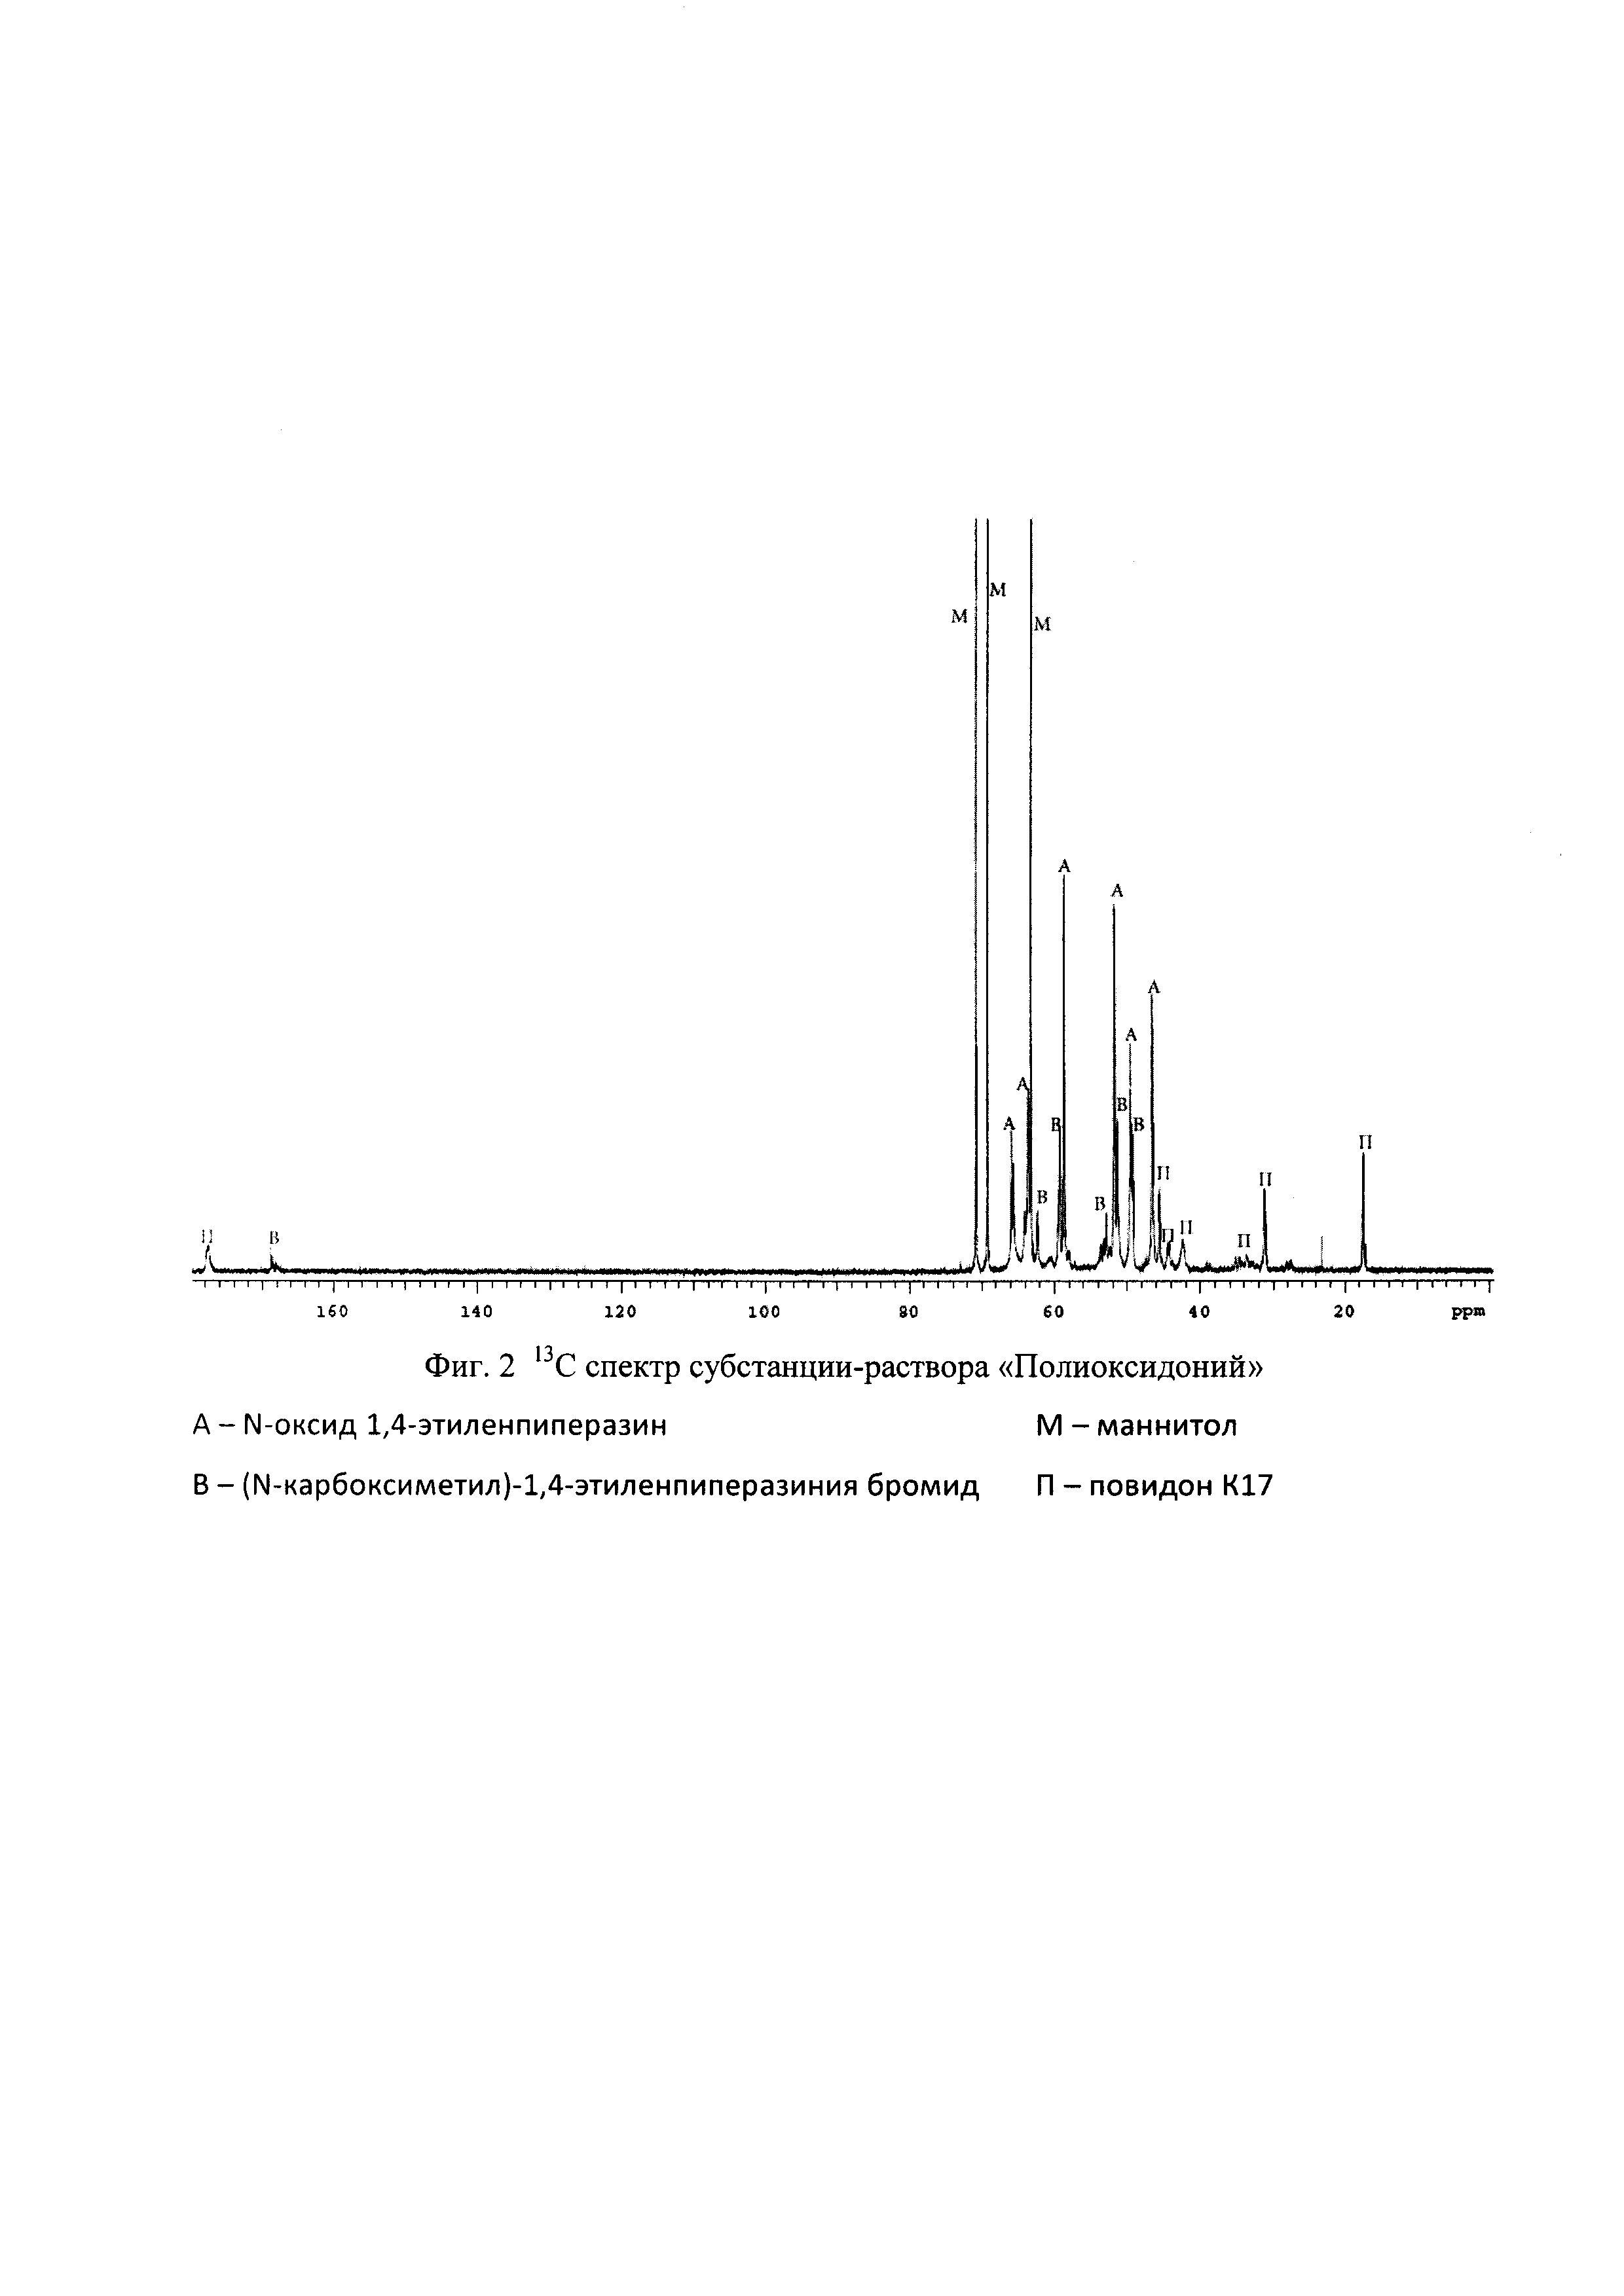 Способ одновременного определения степеней окисления и алкилирования азоксимера бромида - действующего вещества полиоксидония - методом C спектроскопии ЯМР